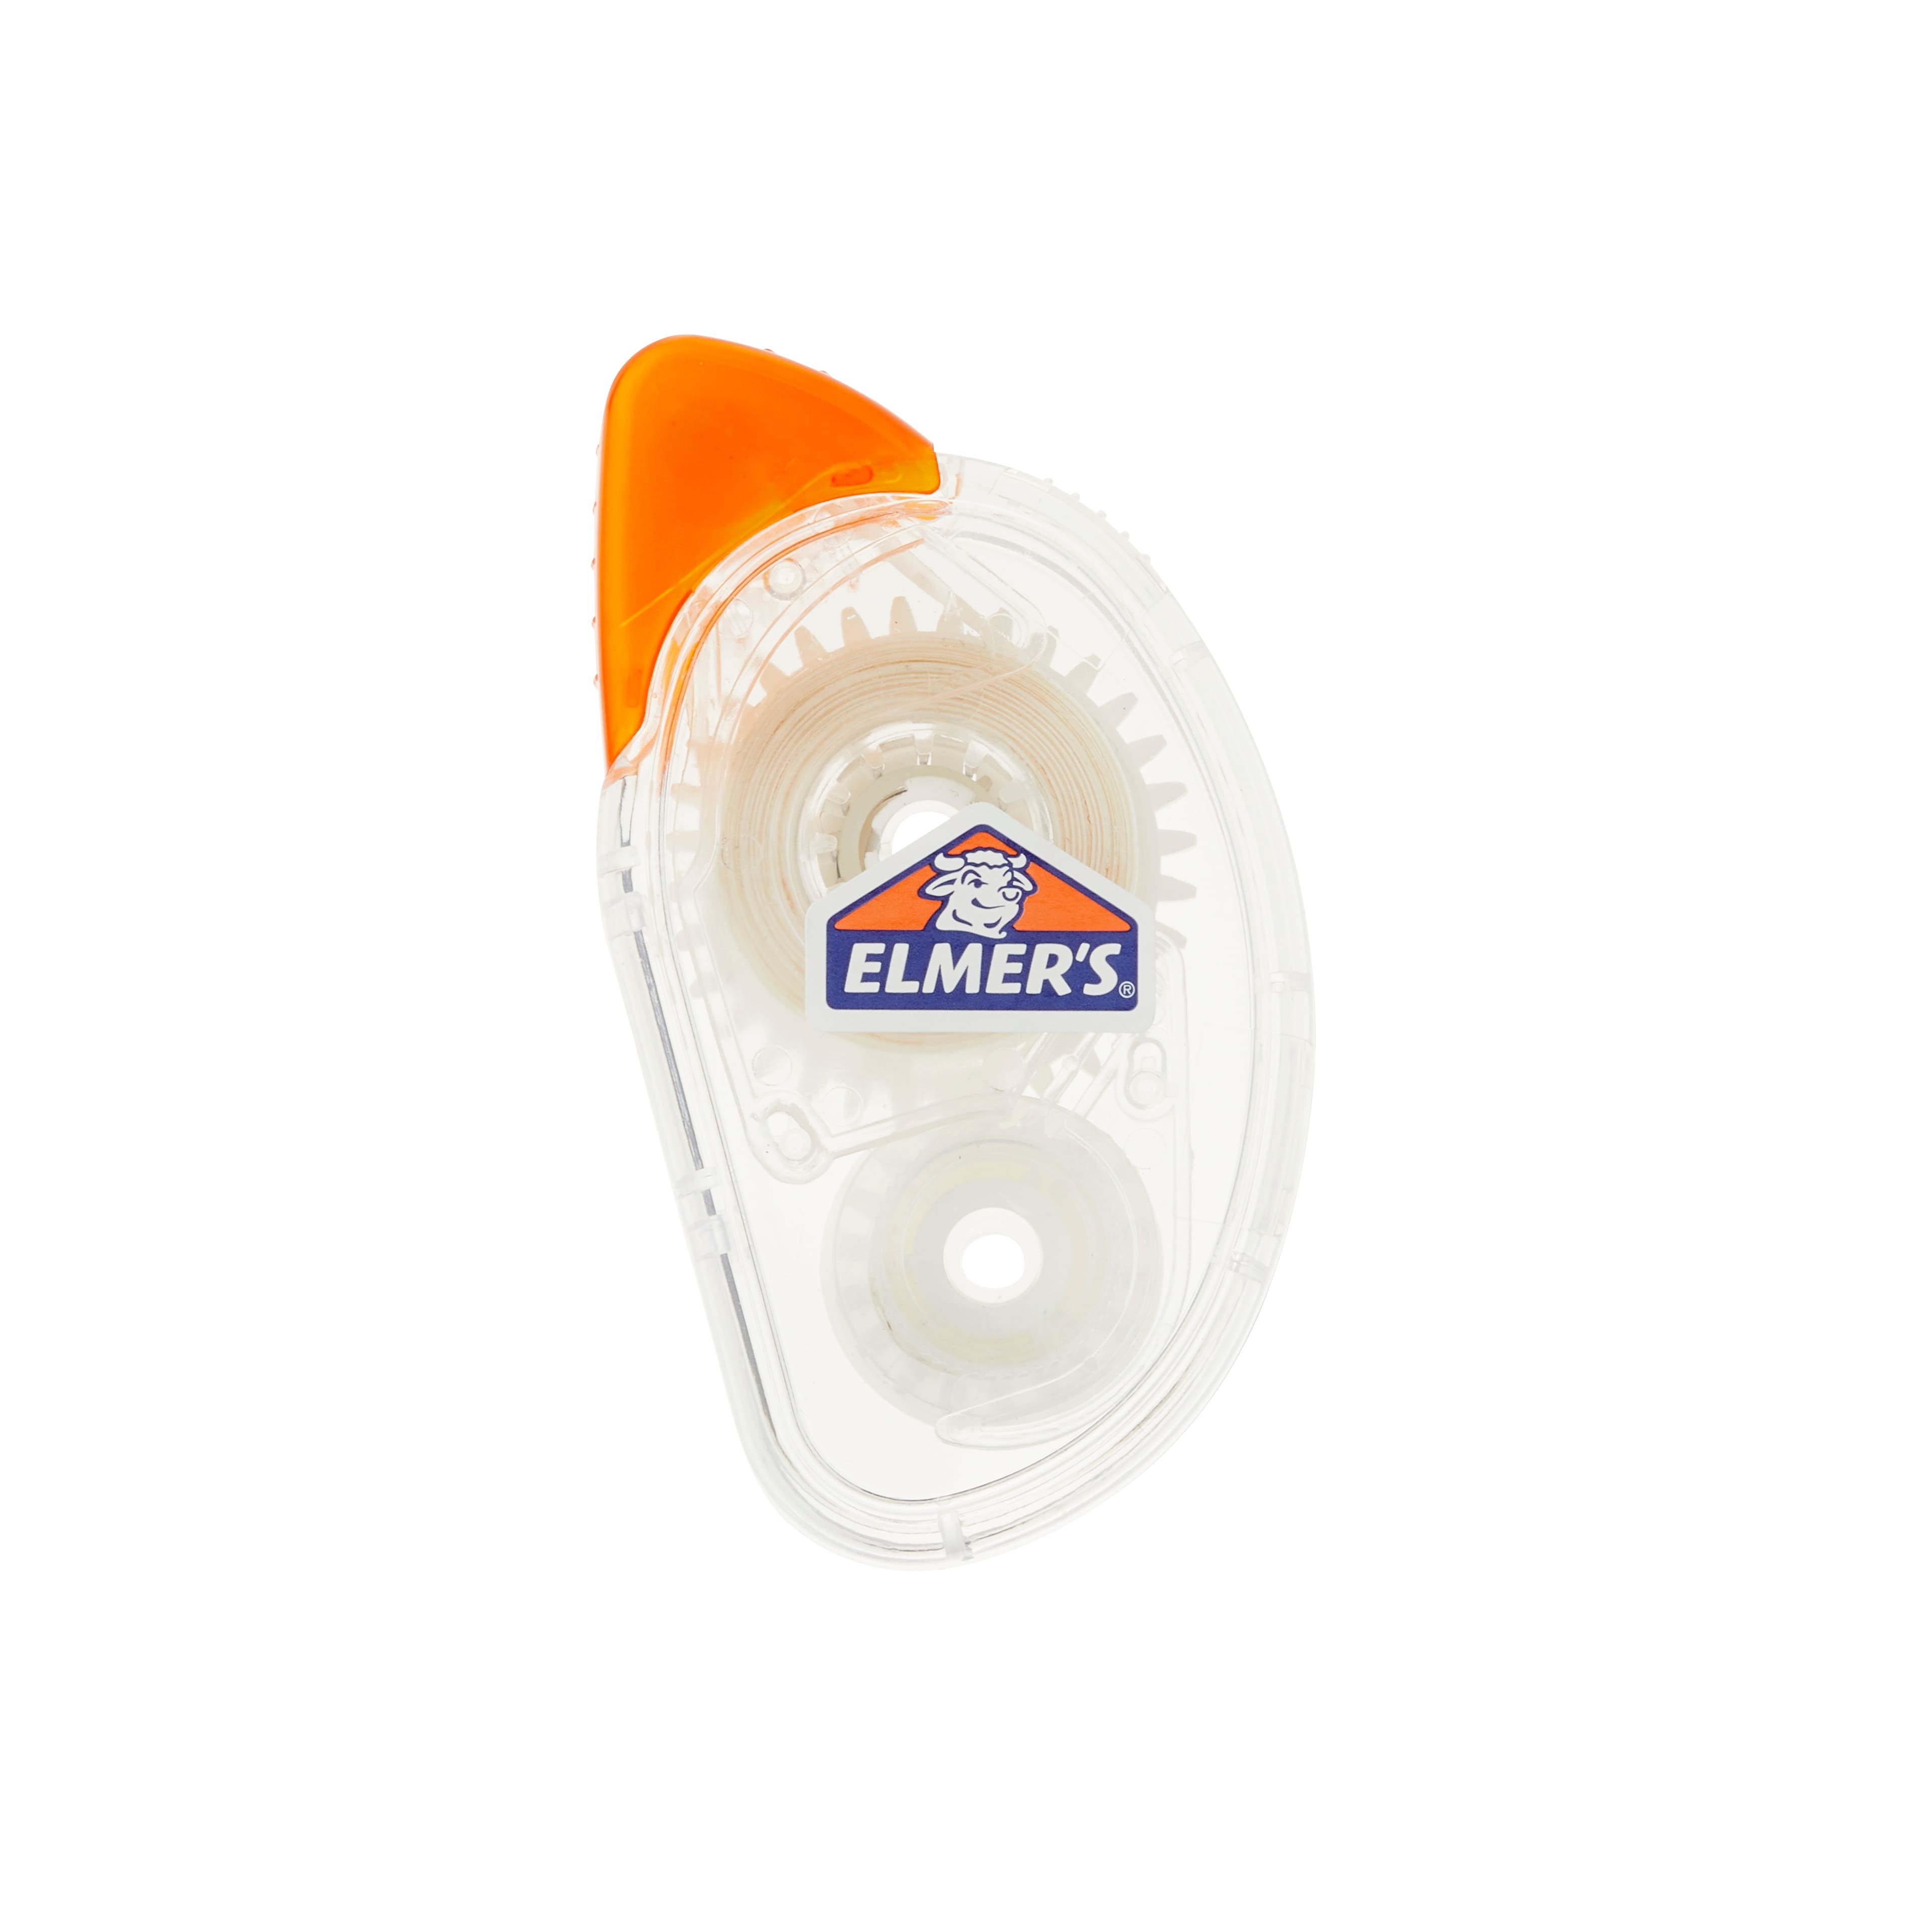 Pins (2) - Stephanoise mediac, Elmers Tape Runner Refill